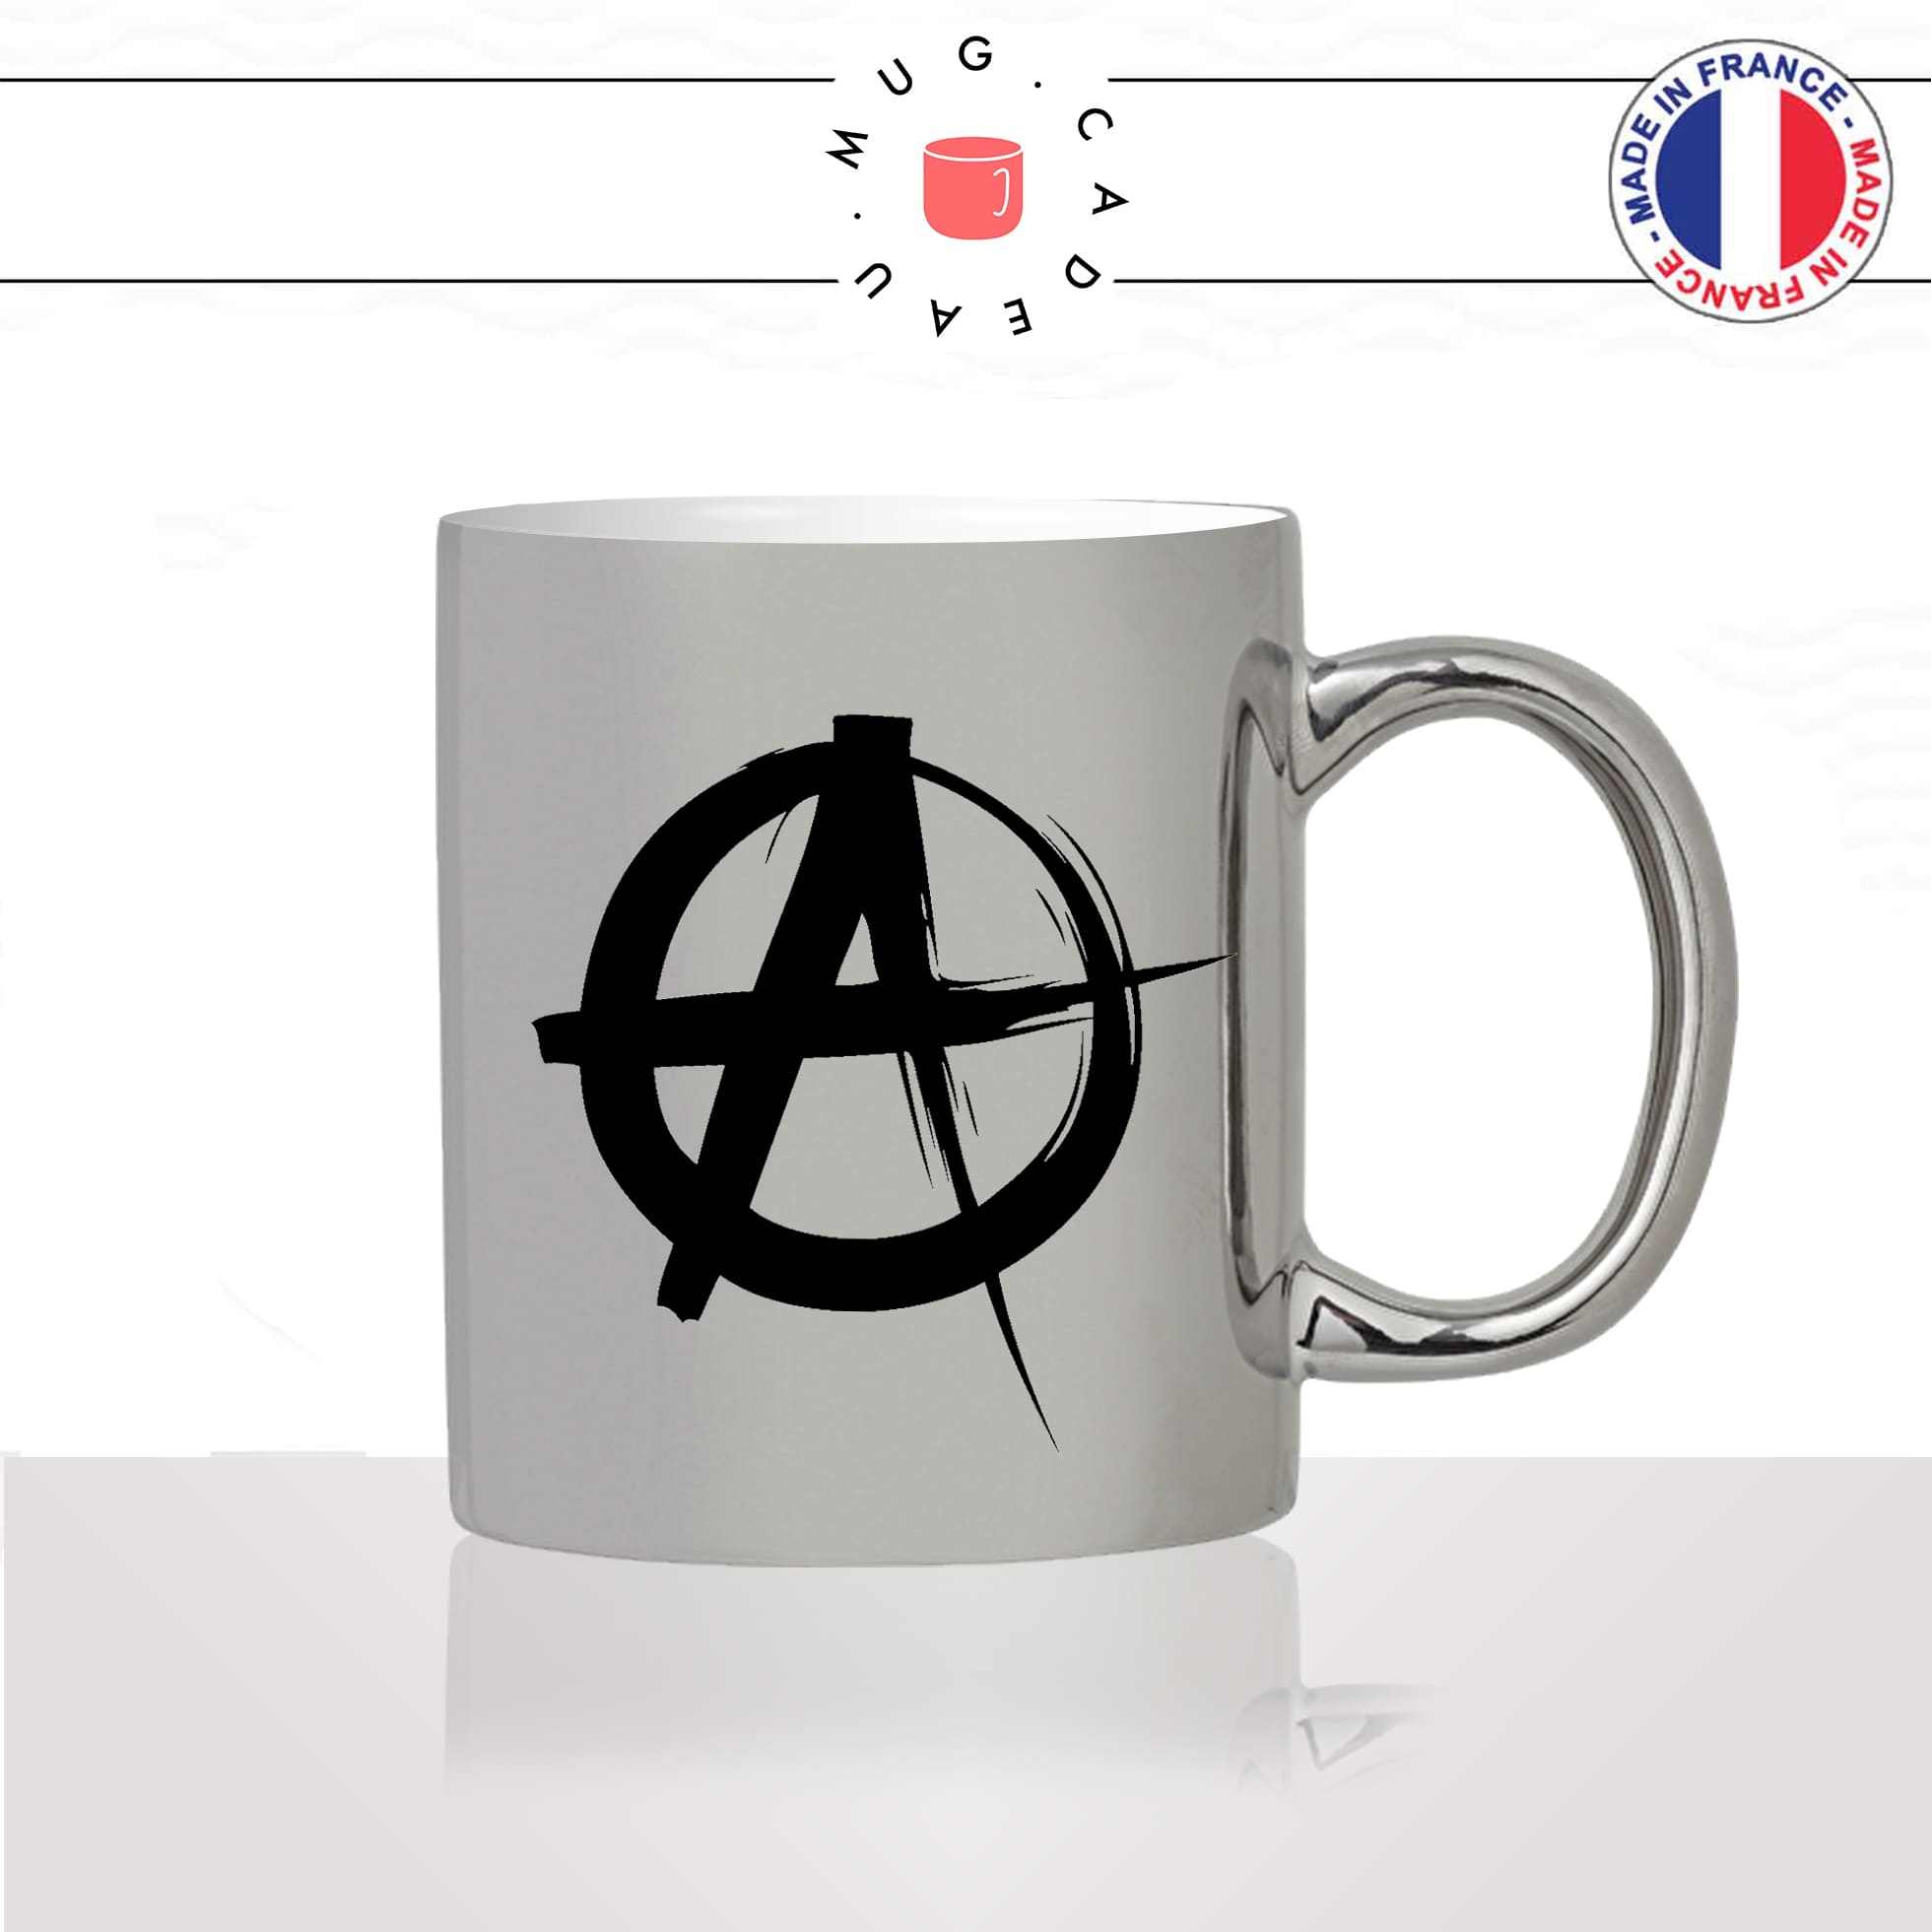 mug-argent-gris-argenté-tasse-idée-cadeau-personnalisé-anarchiste-anarchy-anarchie-politique-black-blocks-anti-fa-societé-fun-drole-offrir-original-2